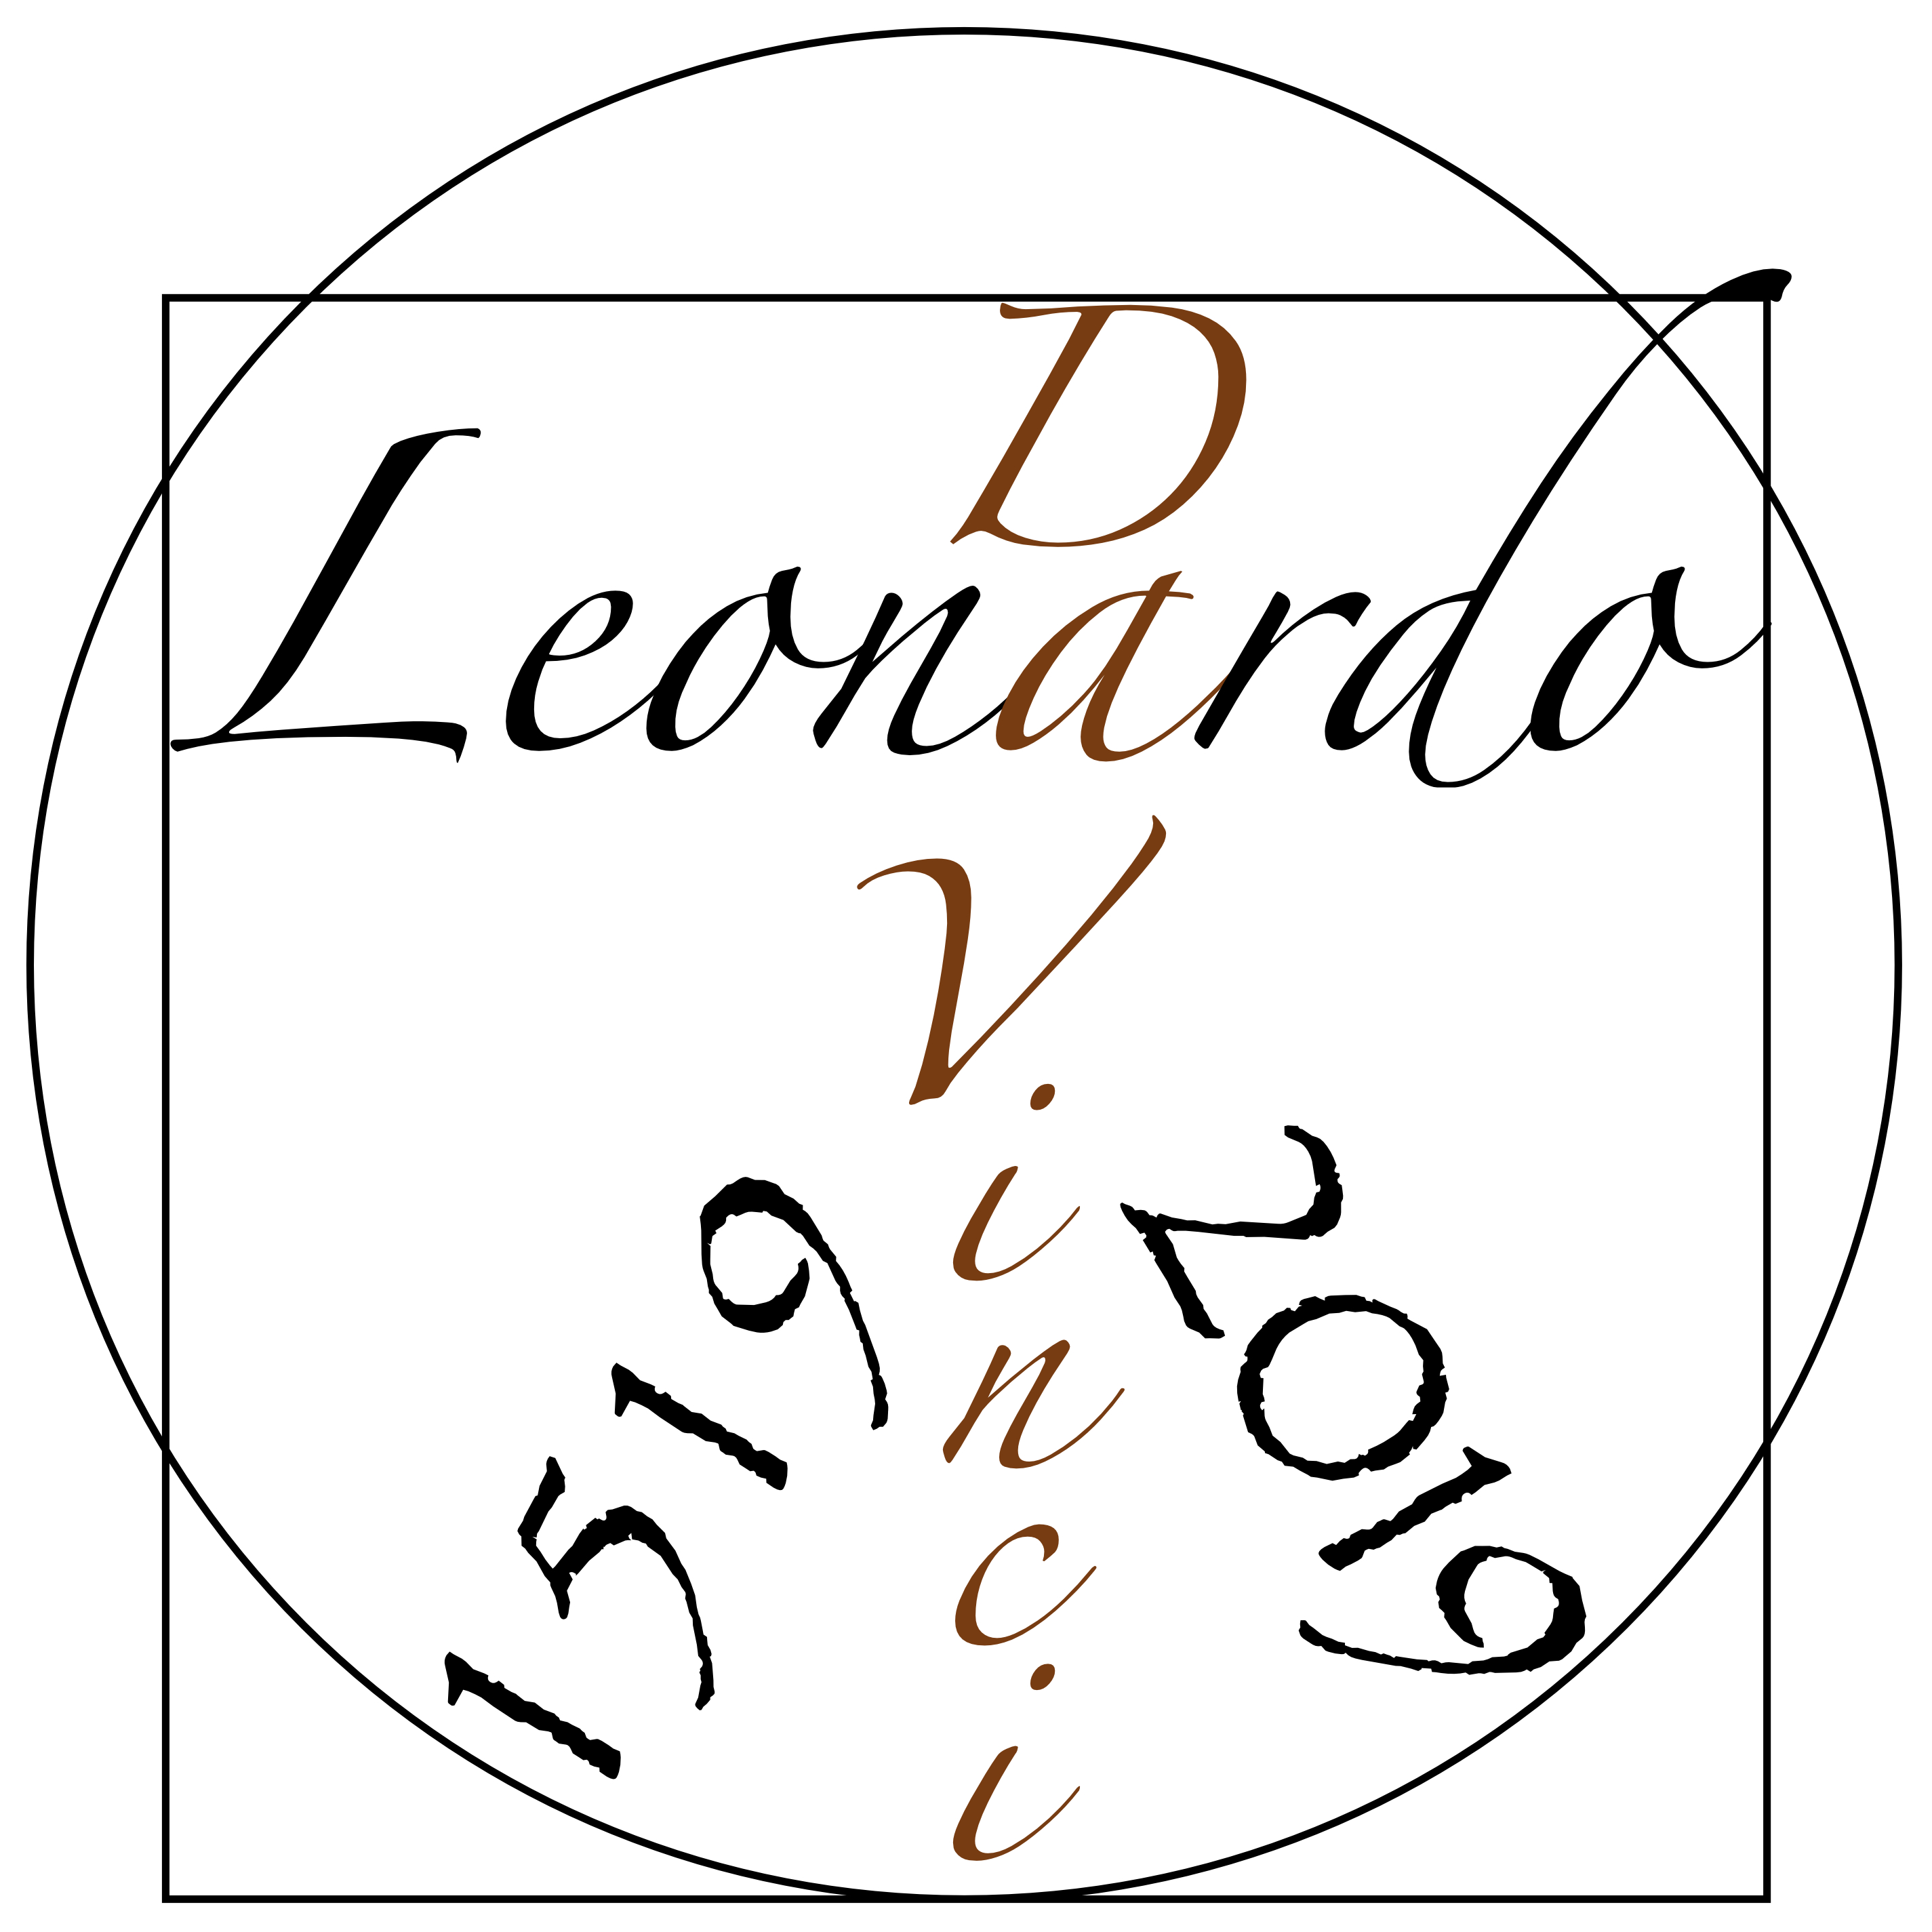 logo Leonardo da Vinci